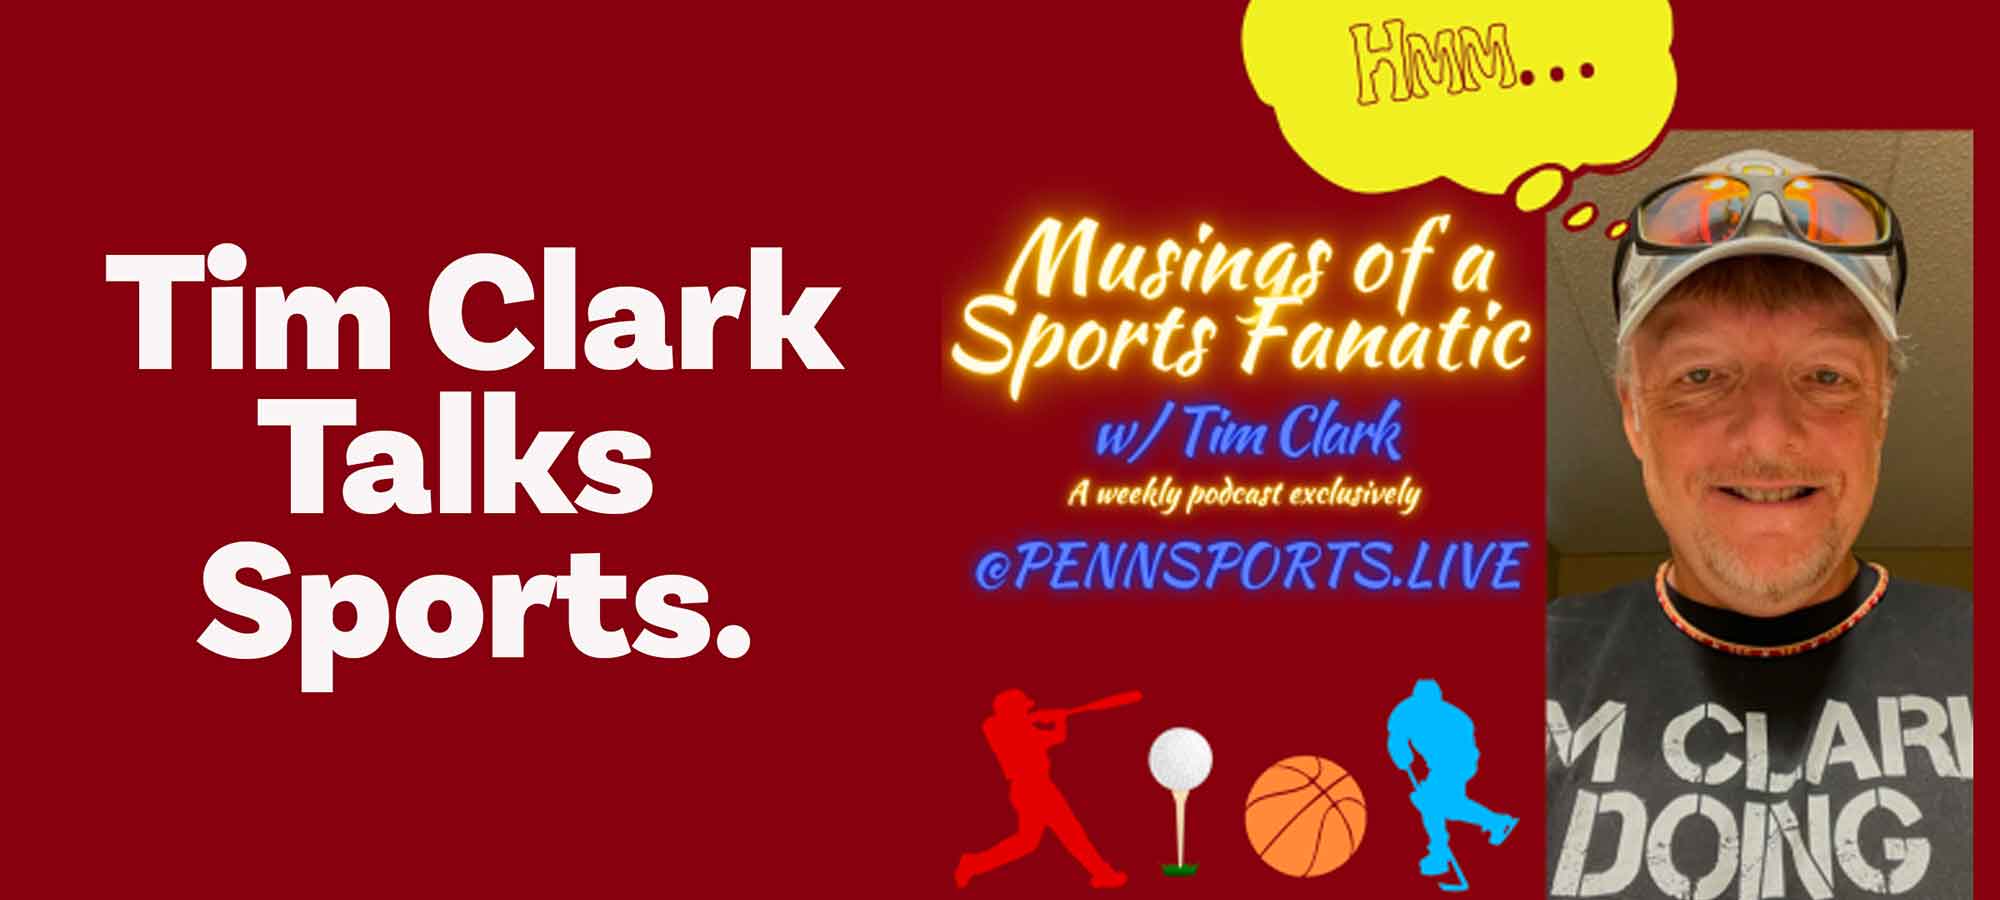 Tim Clark Talks Sports.